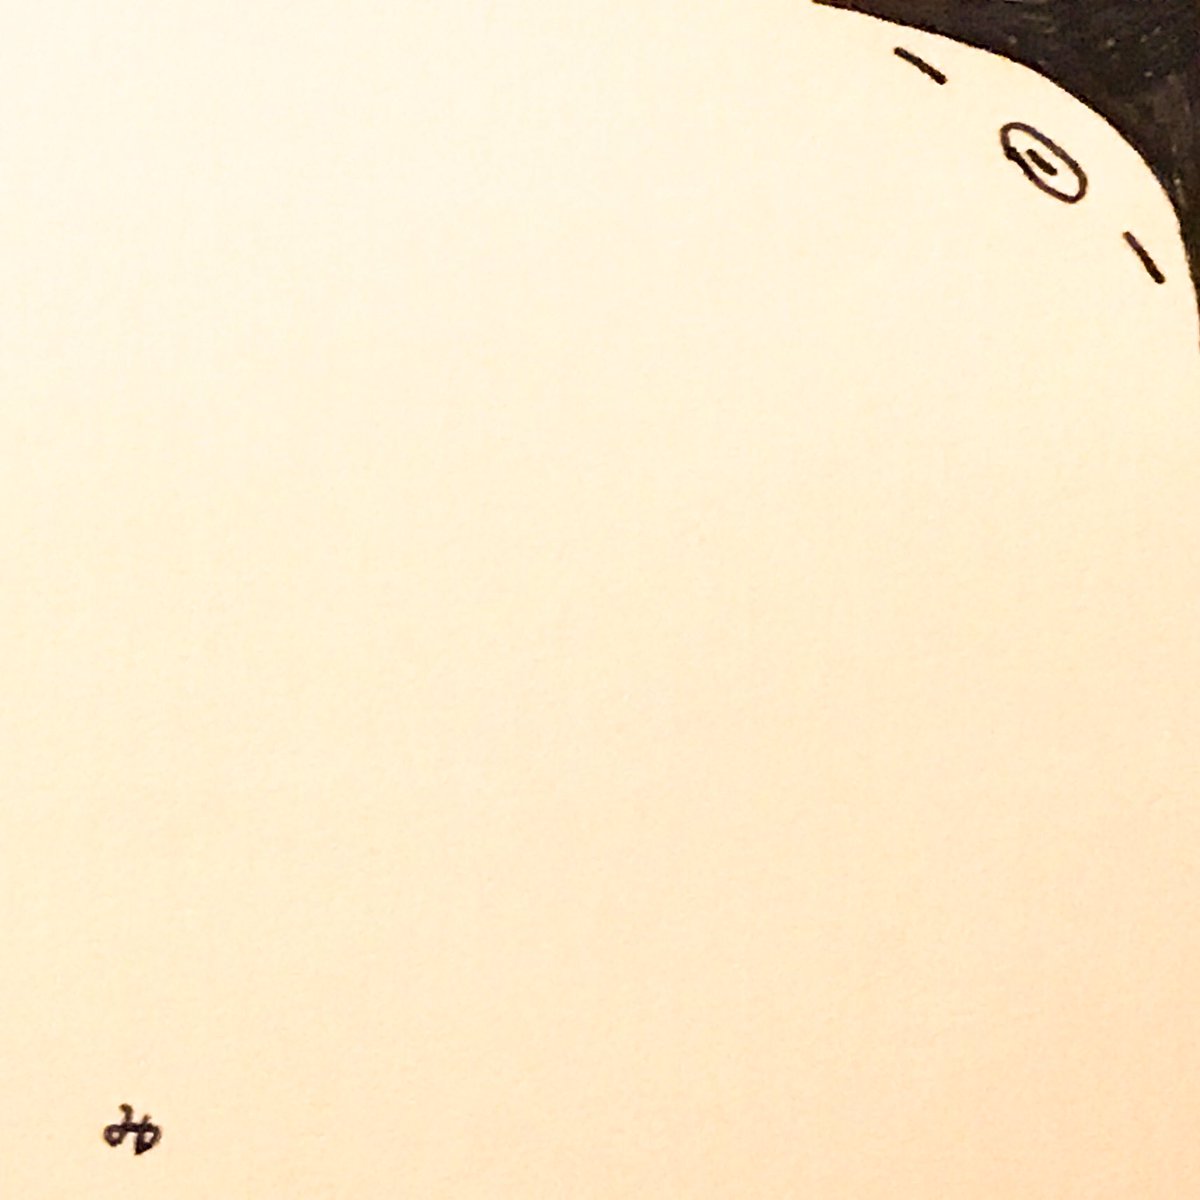 Suzumeno Co ふちぼたもち タンタンのハンカチオマージュ ぼたもち イラスト ゆるイラスト ゆるいイラスト まったり のほほん オリジナルキャラクター ペン画 インク画 タンタンのハンカチ Illustration Artwork Drawing T Co